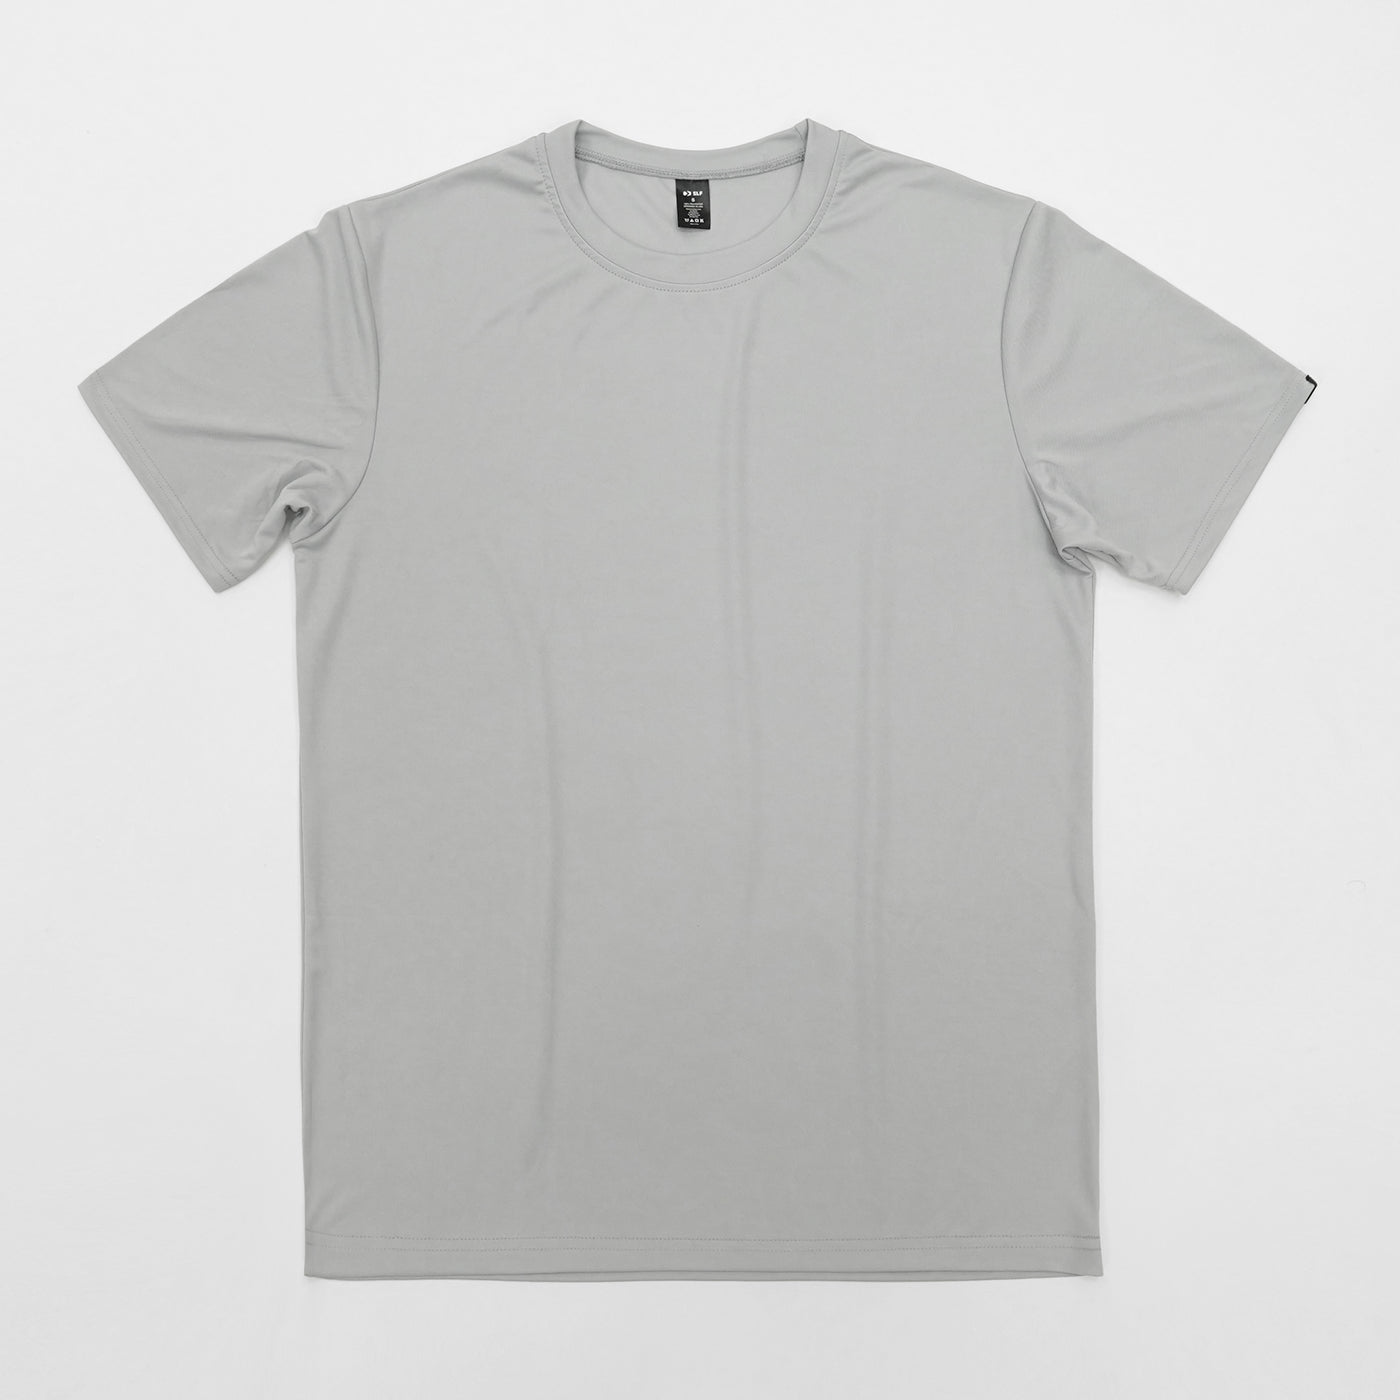 Hue Light Gray Quick Dry Shirt